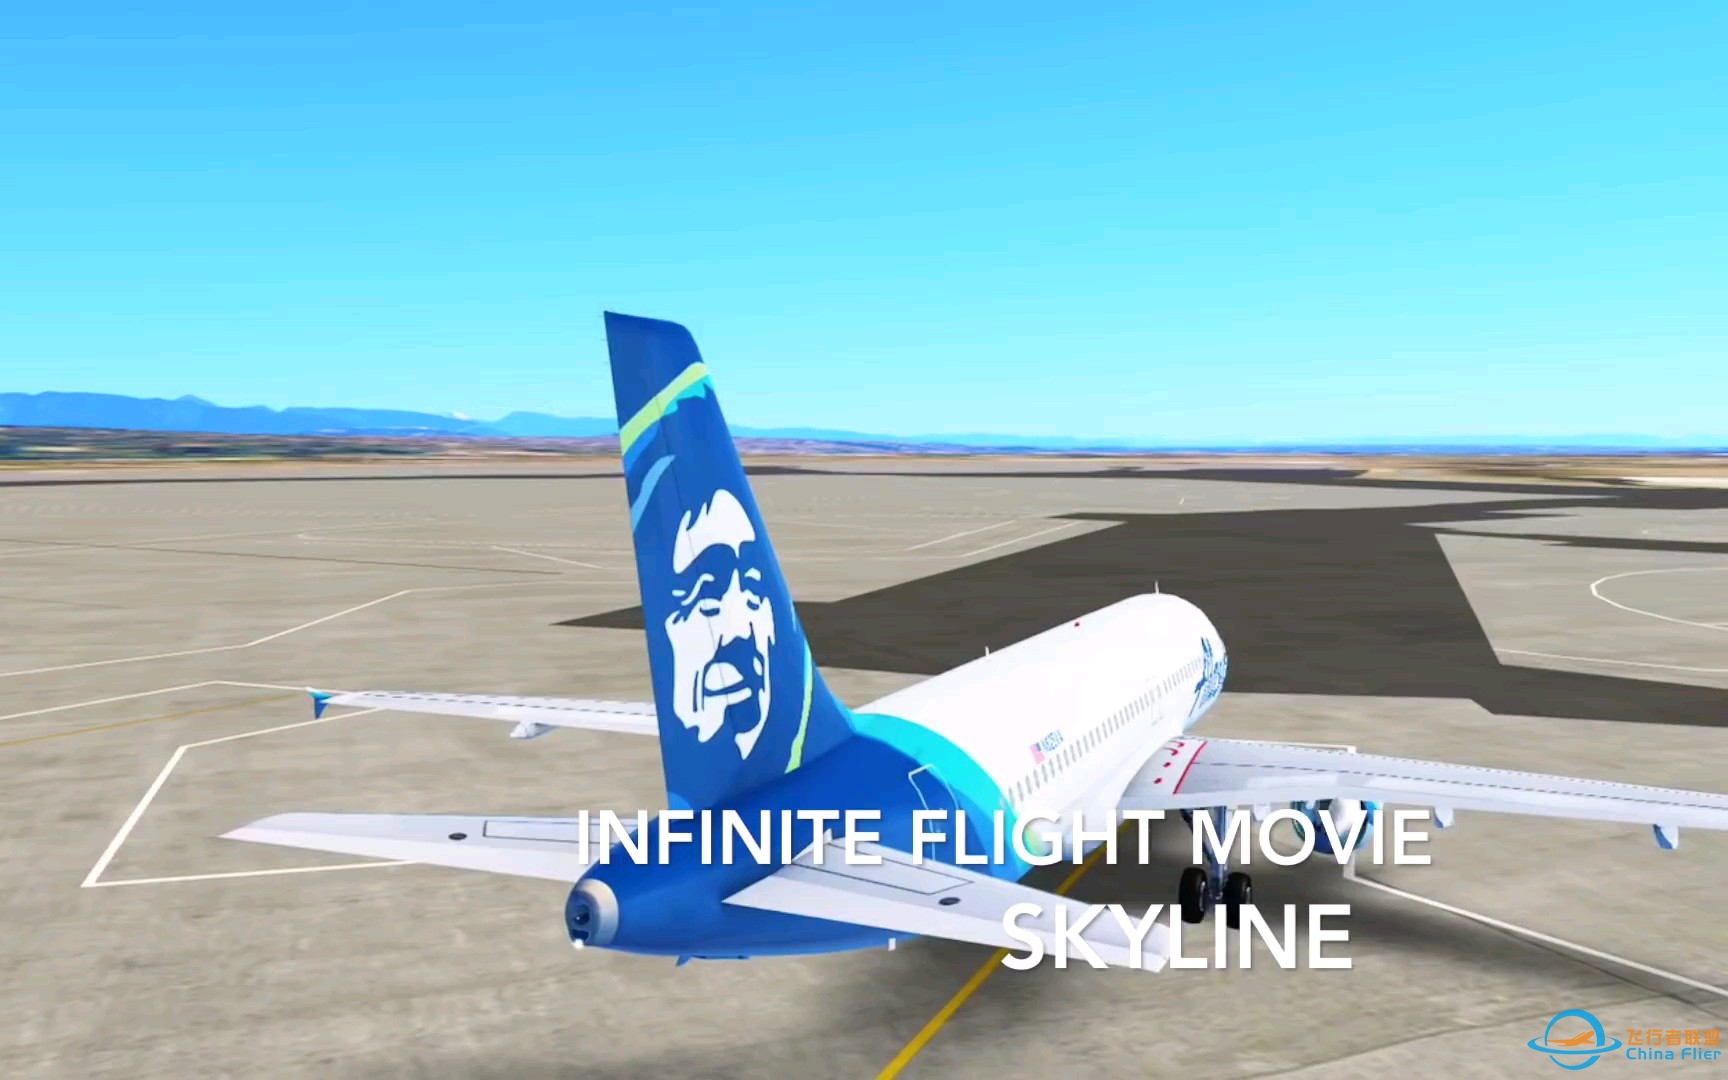 【搬运】infinite flight微电影#2 SKYLINE-9831 